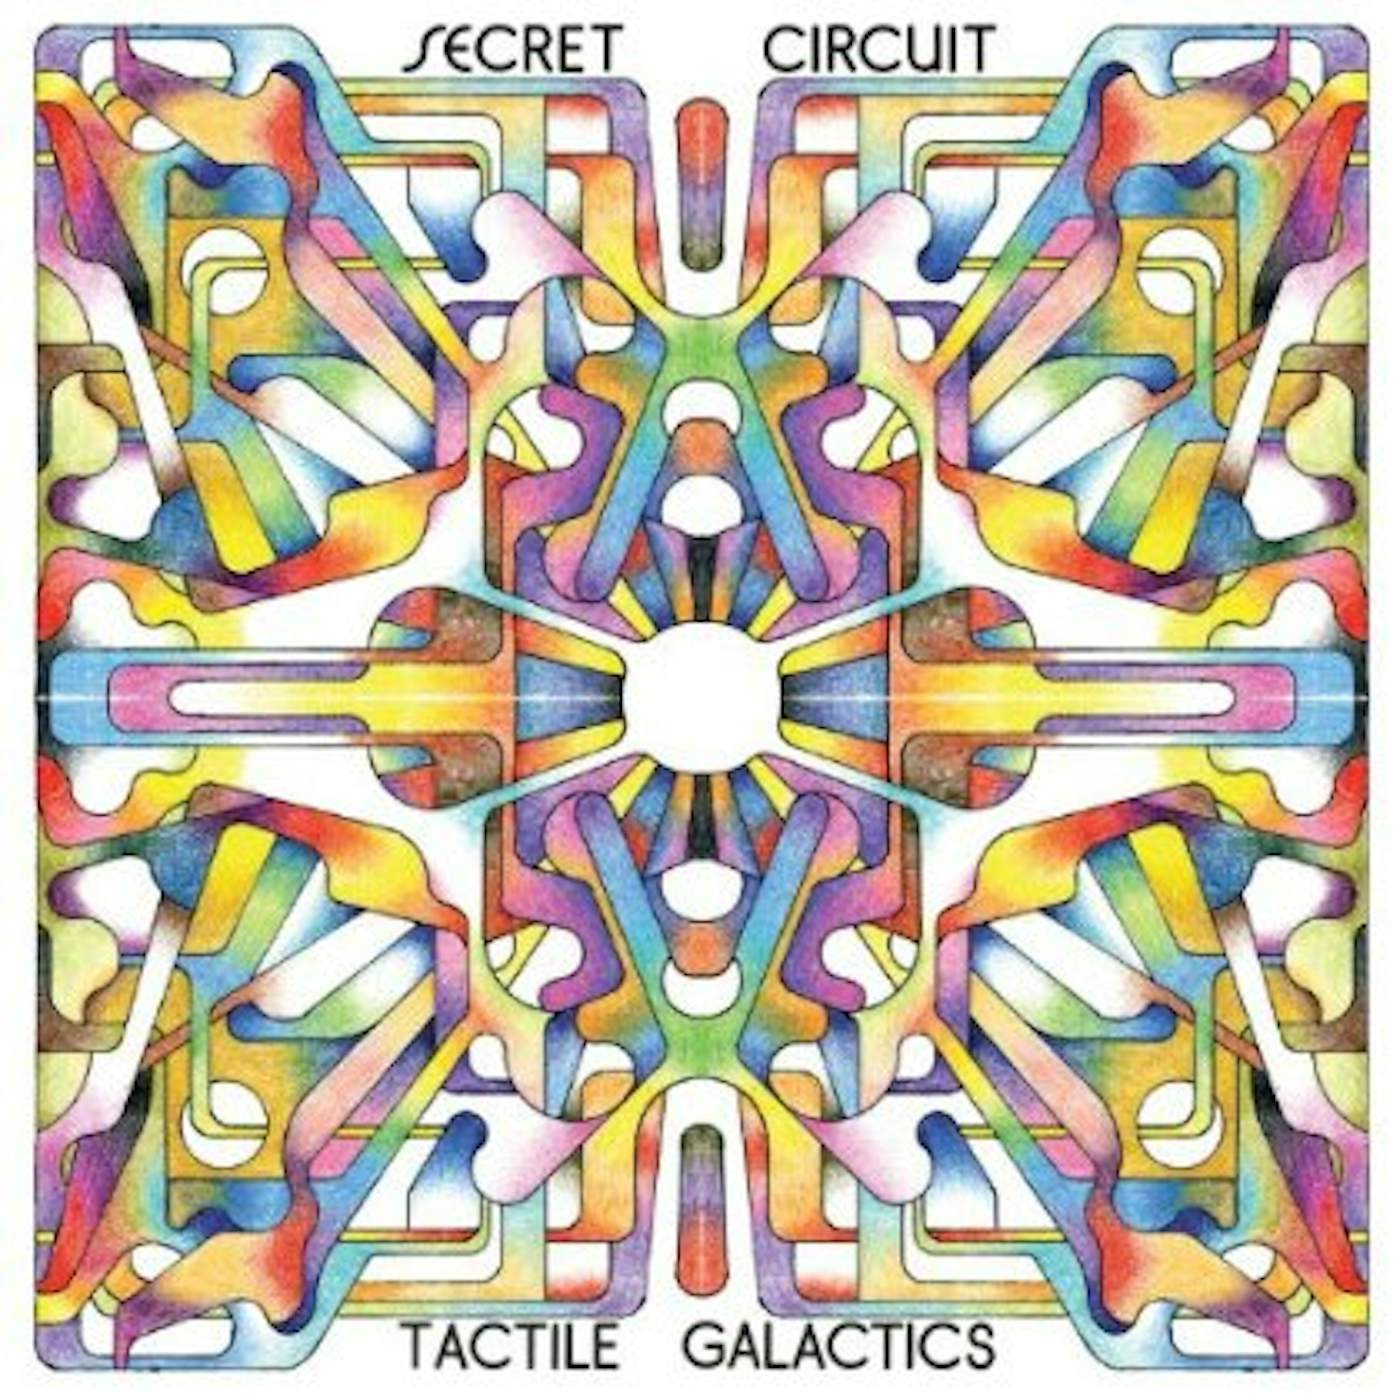 Secret Circuit TACTILE GALACTICS CD